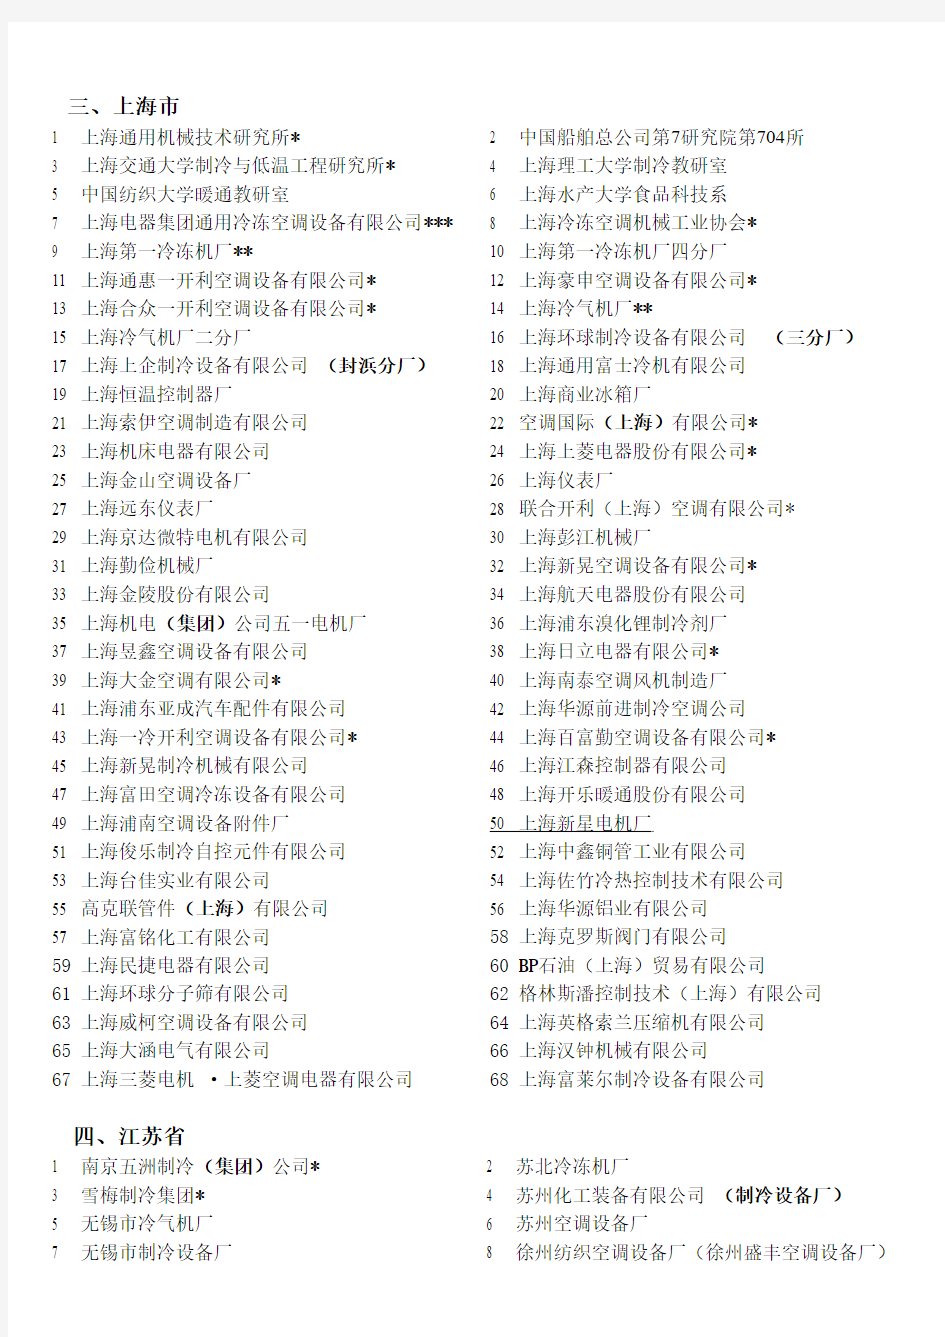 中国制冷协会名单